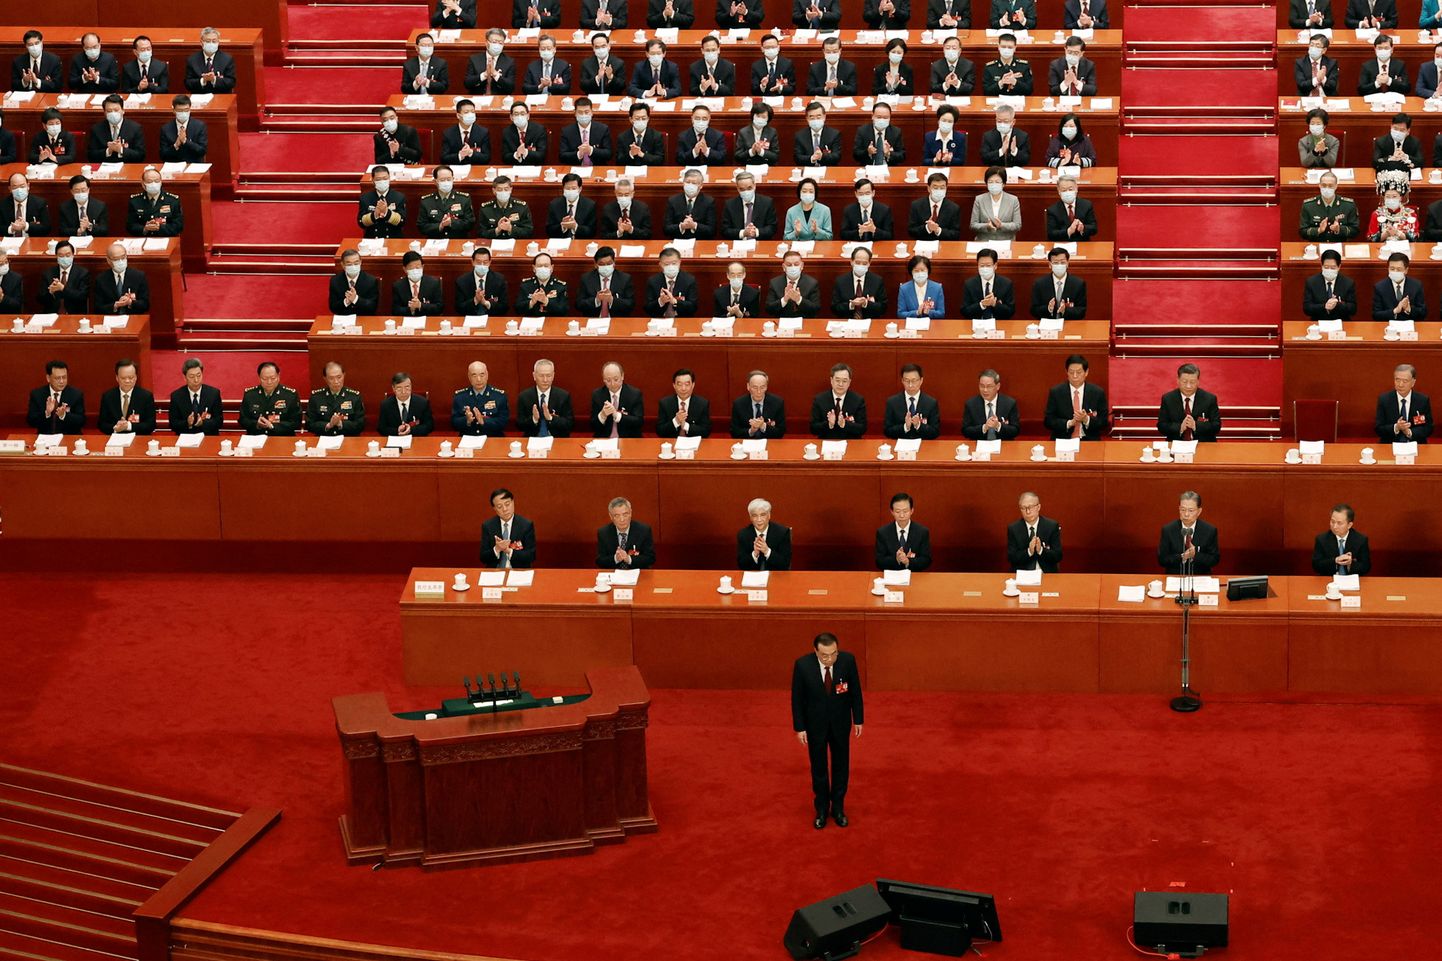 Hiina peaminister Li Keqiang kummardamas enne valitsuse raporti esitamist parlamendile.